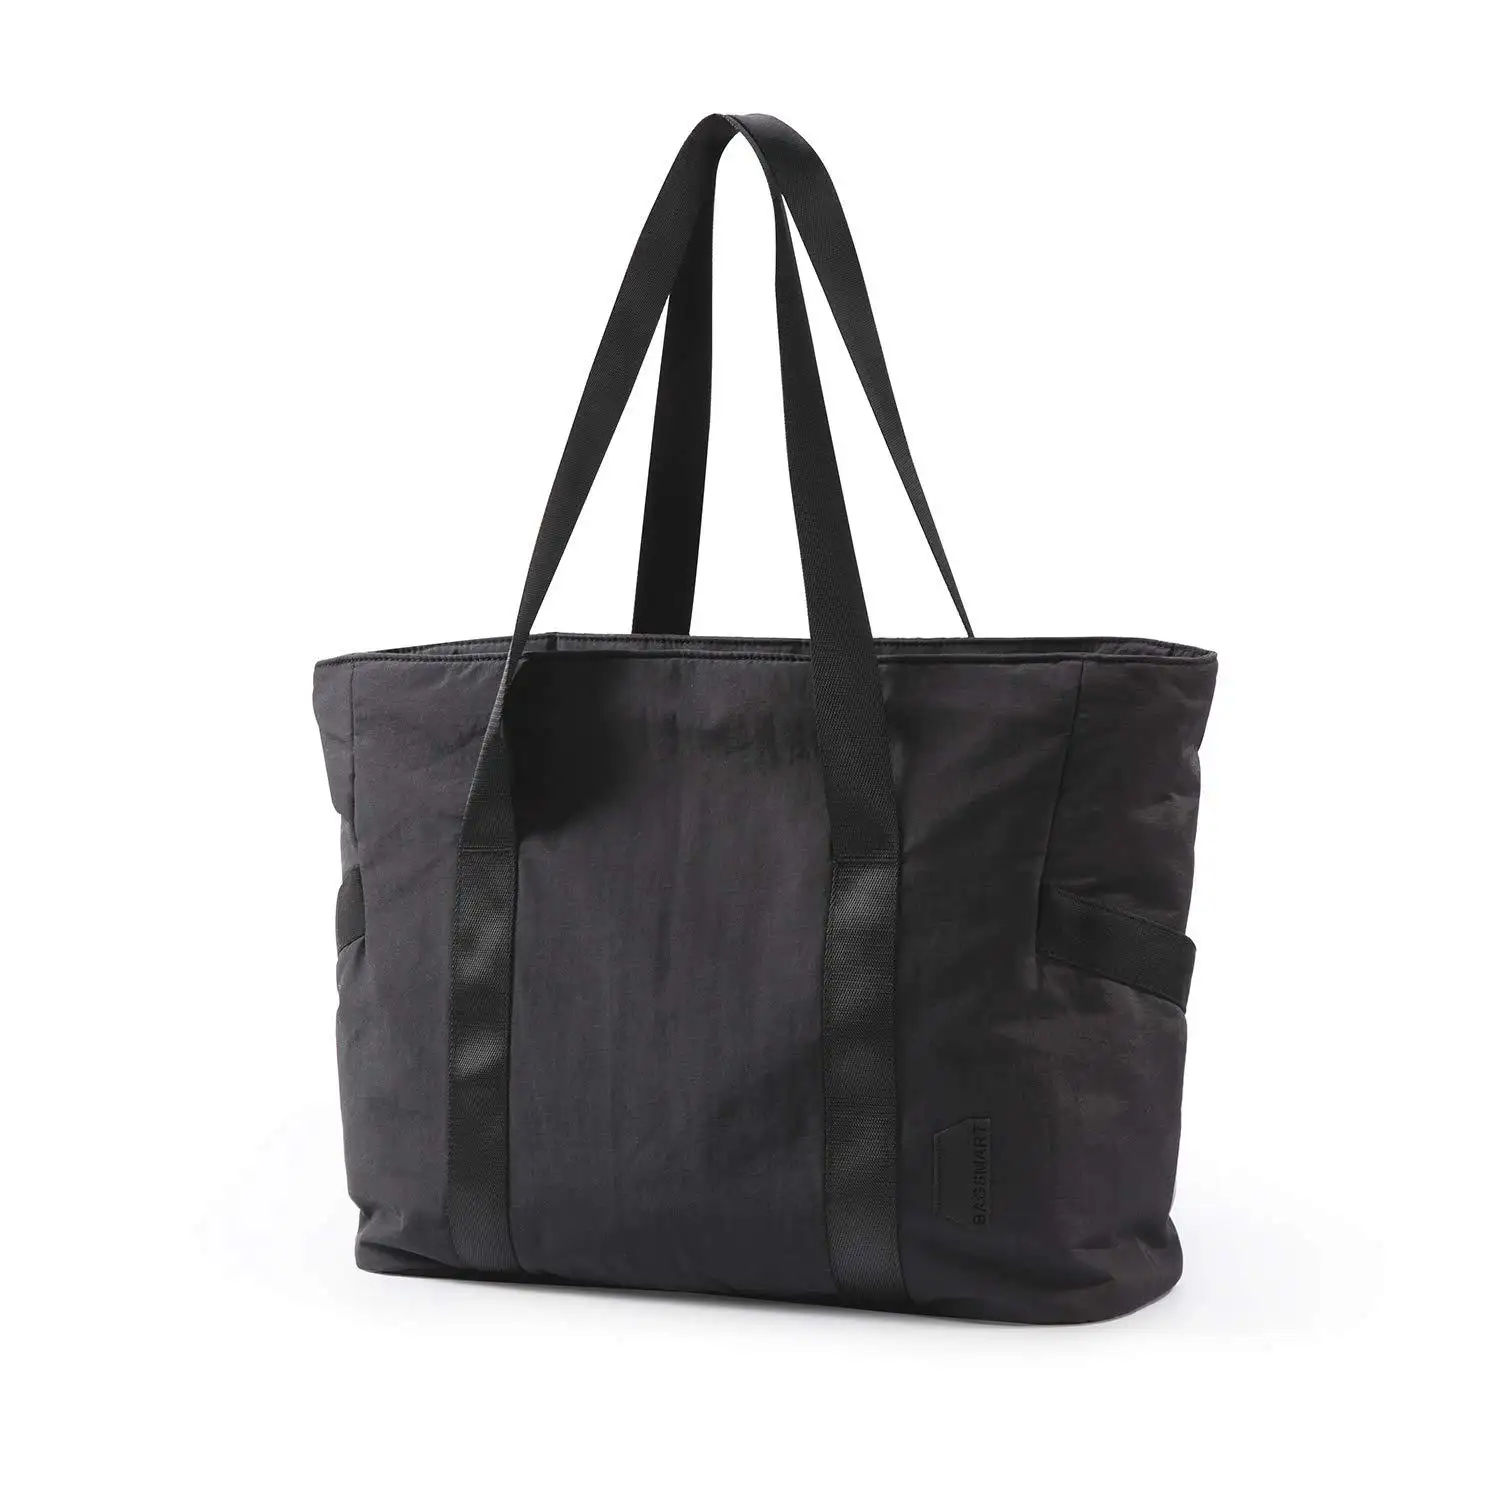 OEM ODM impermeabile di alta qualità Tote Bag da donna grande borsa a tracolla Top con manico a mano